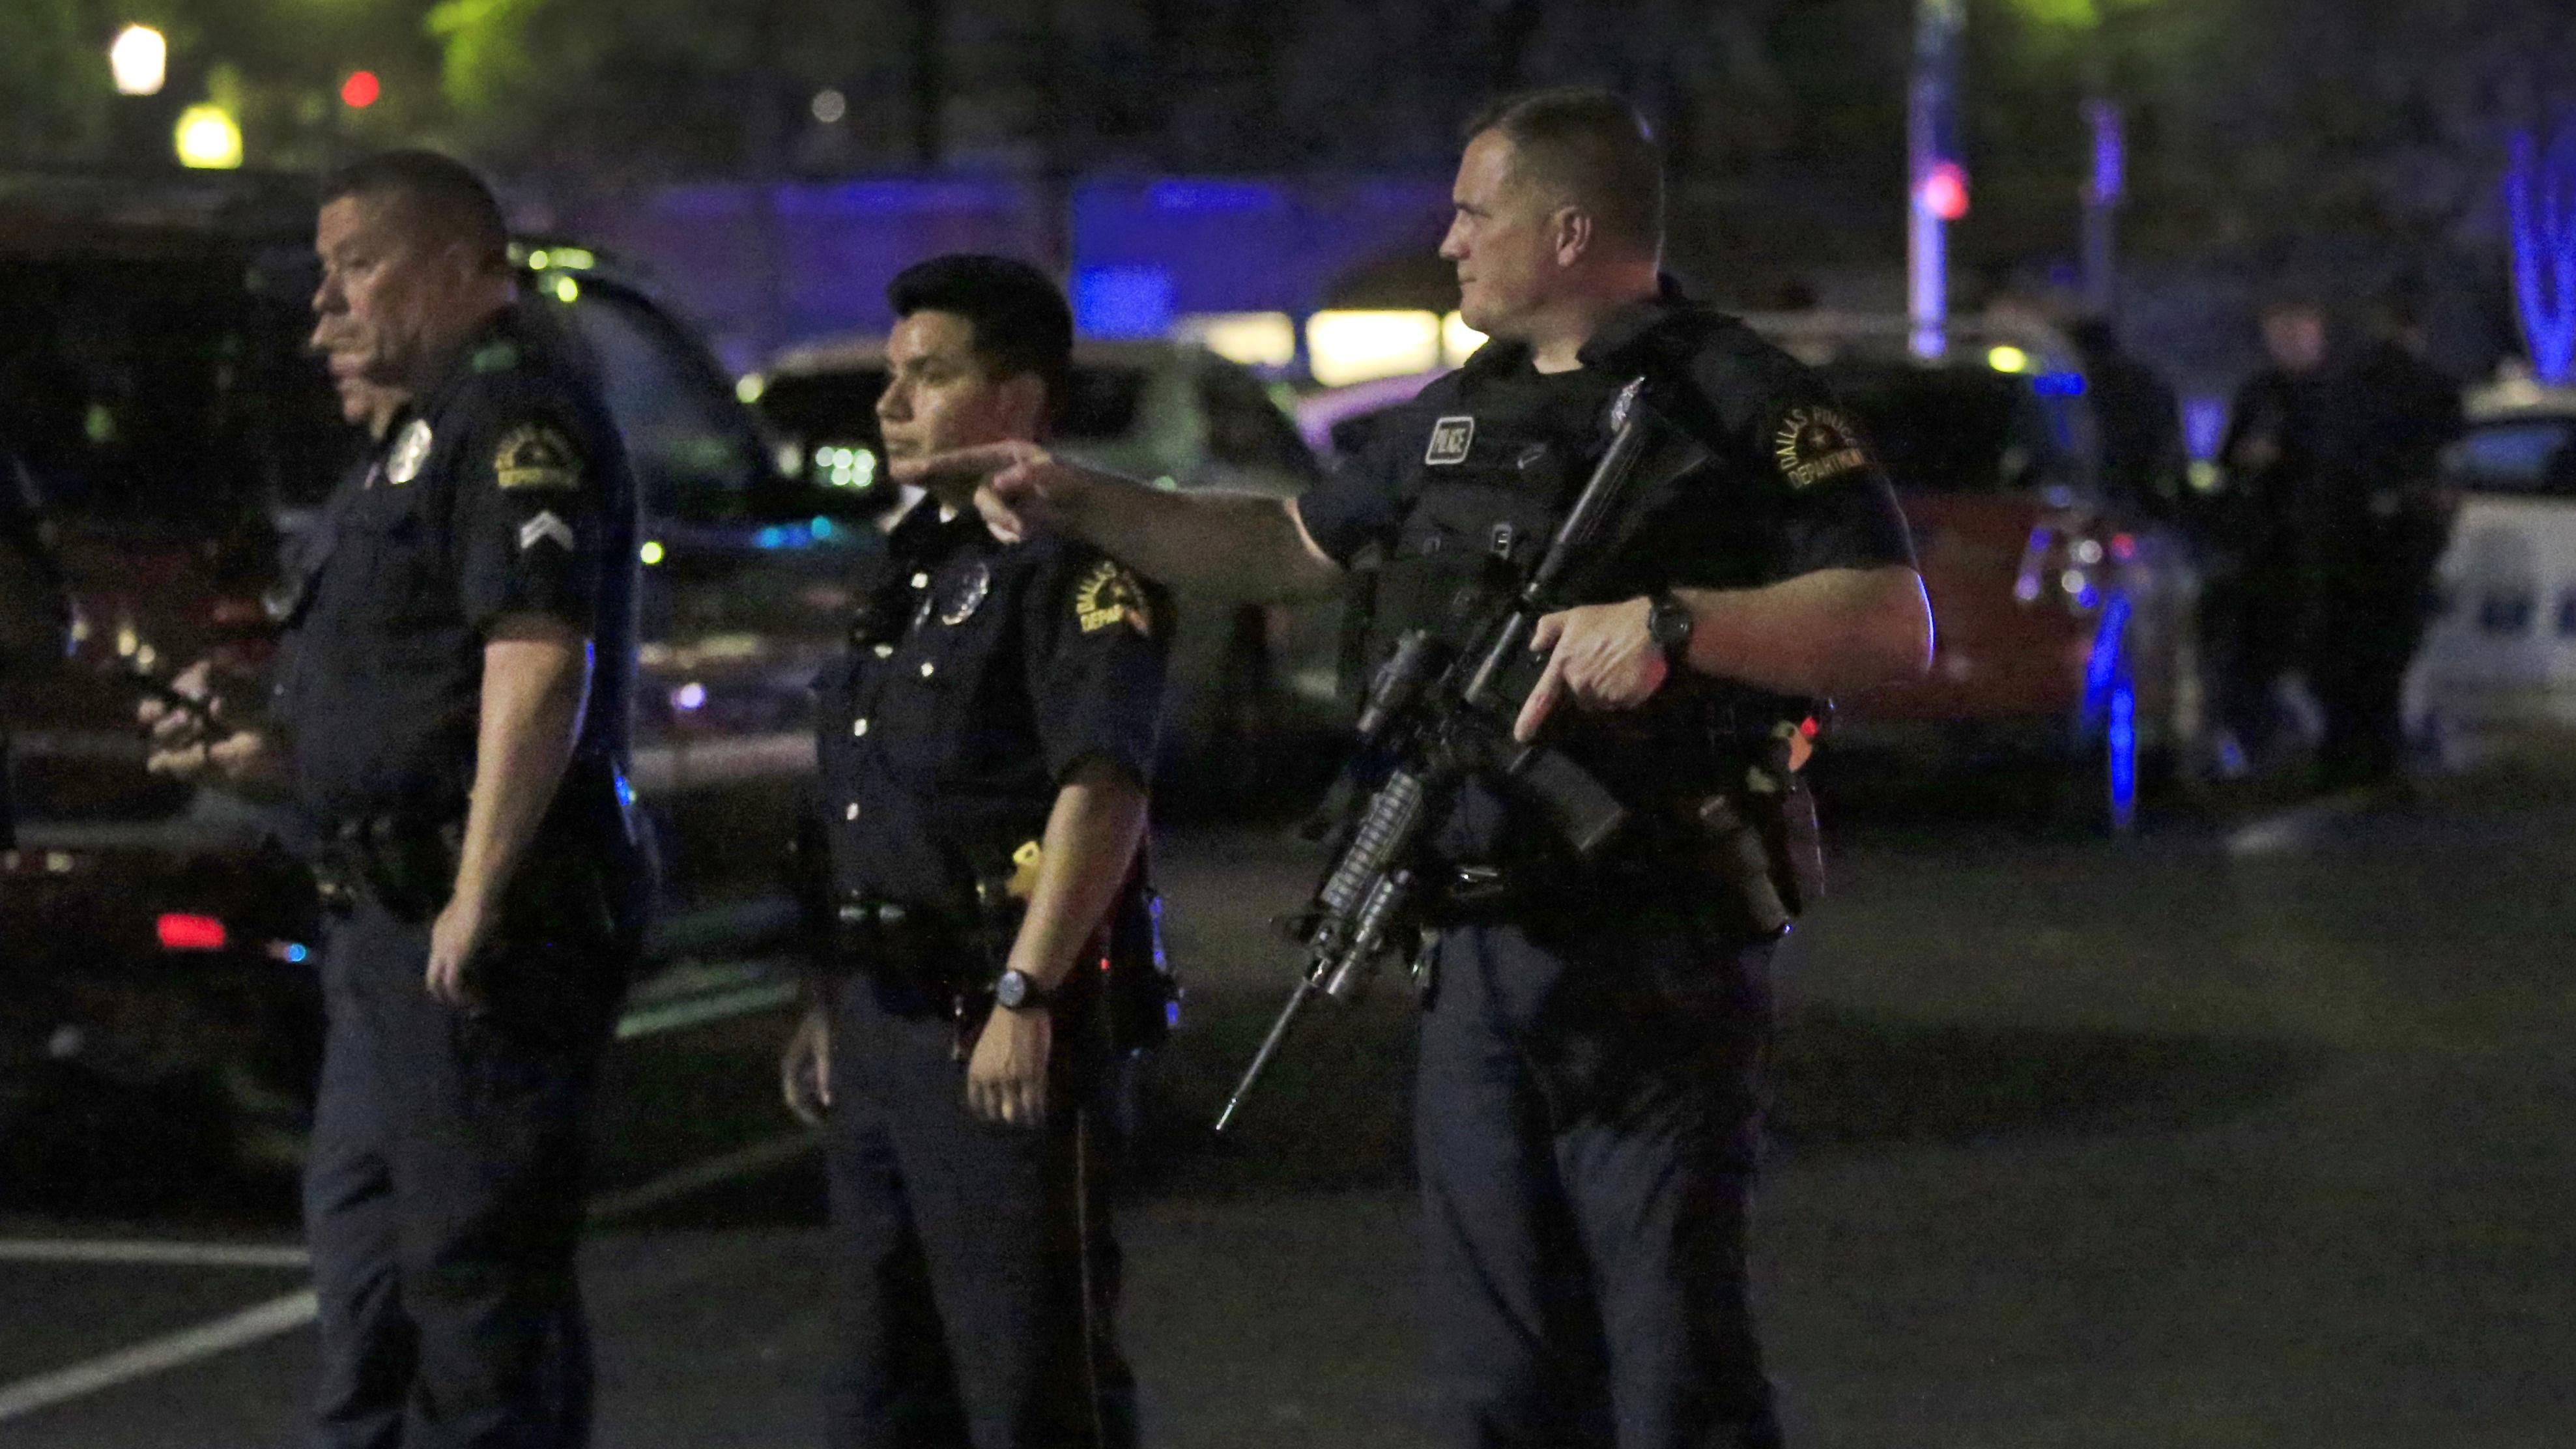 Ужасная перестрелка с полицией в Далласе: появилось видео происшествия (18+)